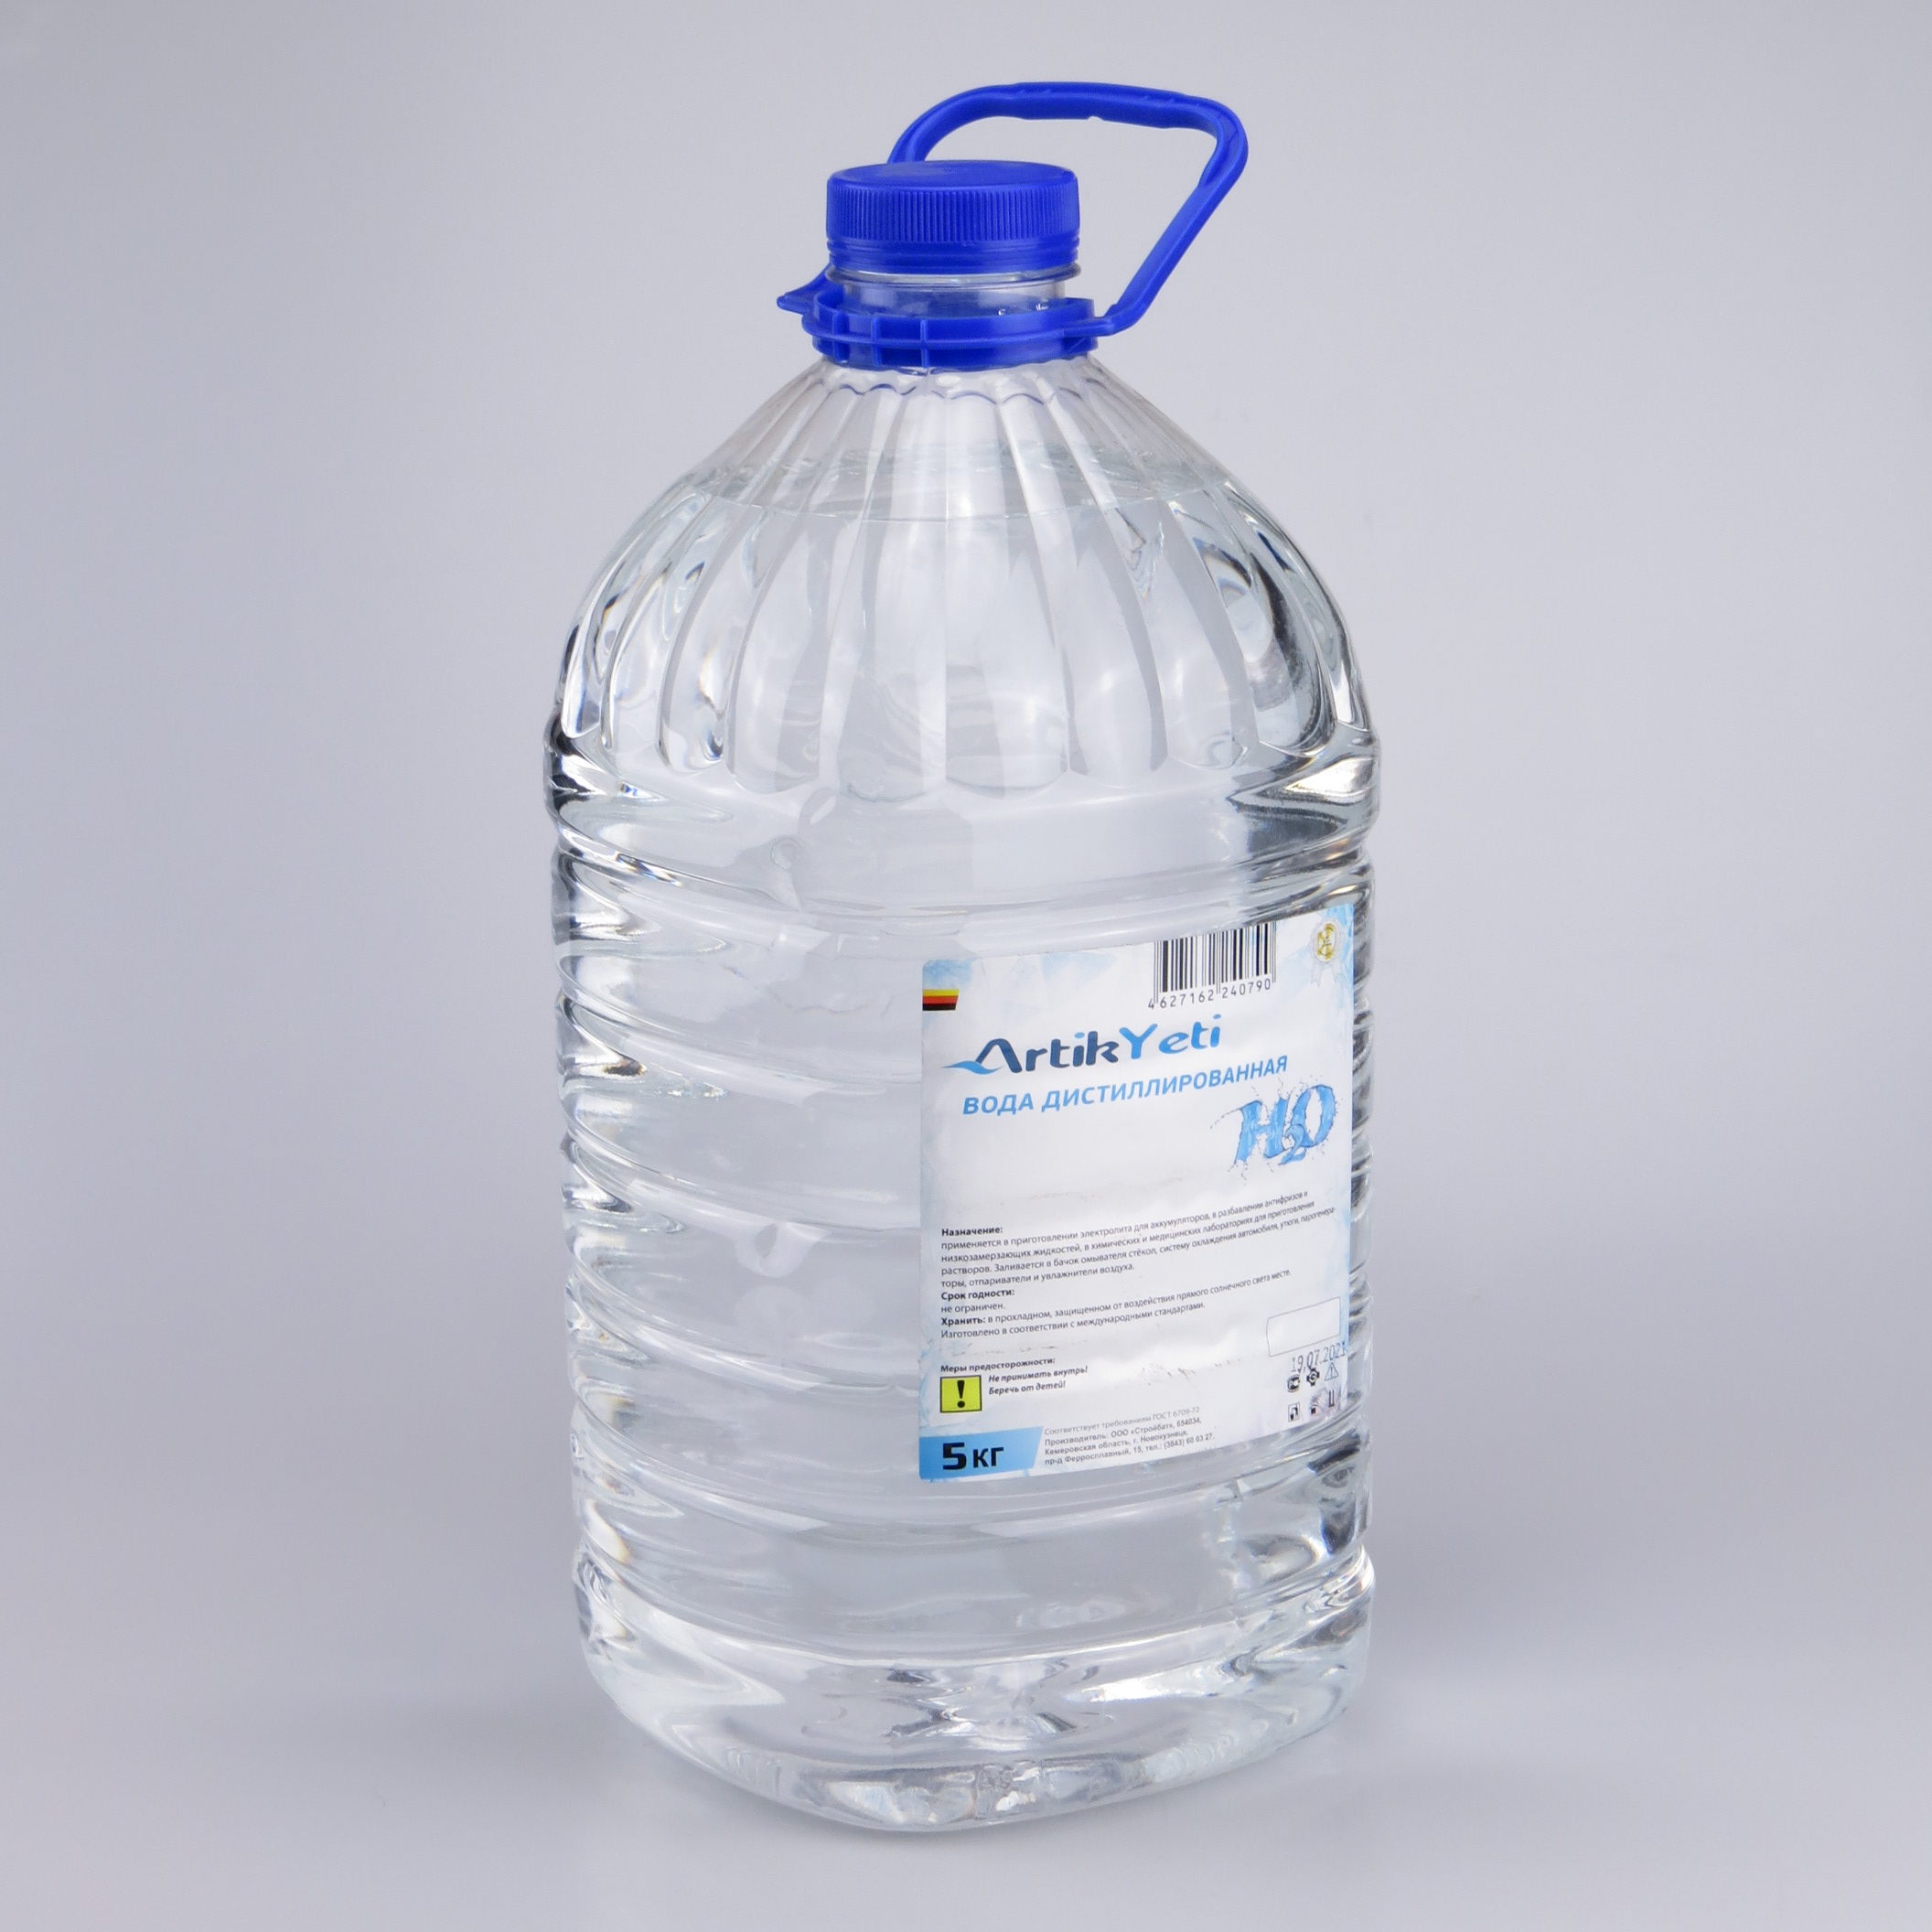 Пэт 5л. Вода дистиллированная БАКСС ПЭТ 5л. Вода дистиллированная Атлант 5 л. 83190394350 Вода дистиллированная. Бутылка для дистиллированной воды.